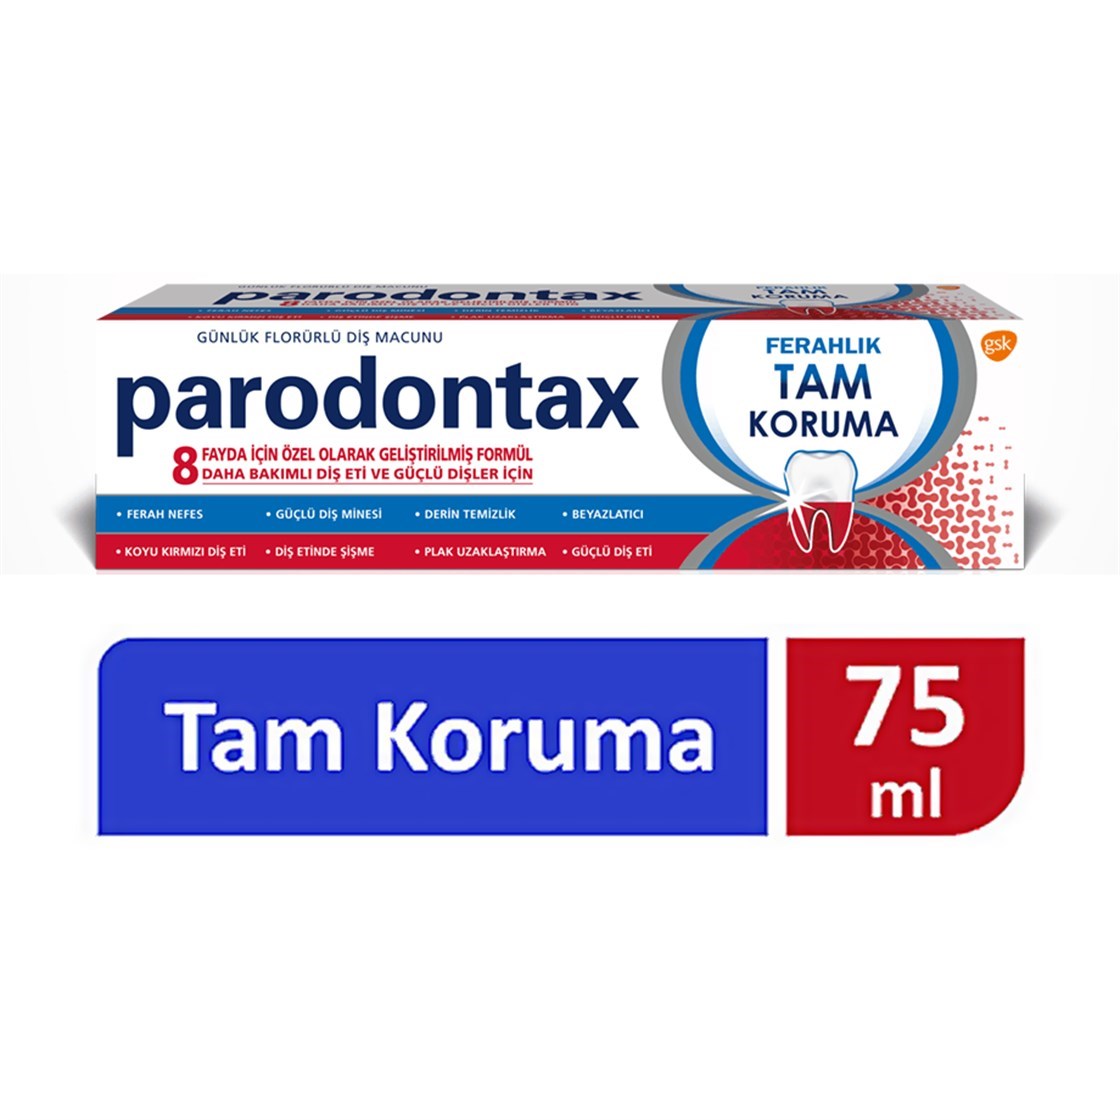 Parodontax Tam Koruma Ferahlık Diş Macunu 75 ml Ürün ve Fiyatları |  Dermoailem.com